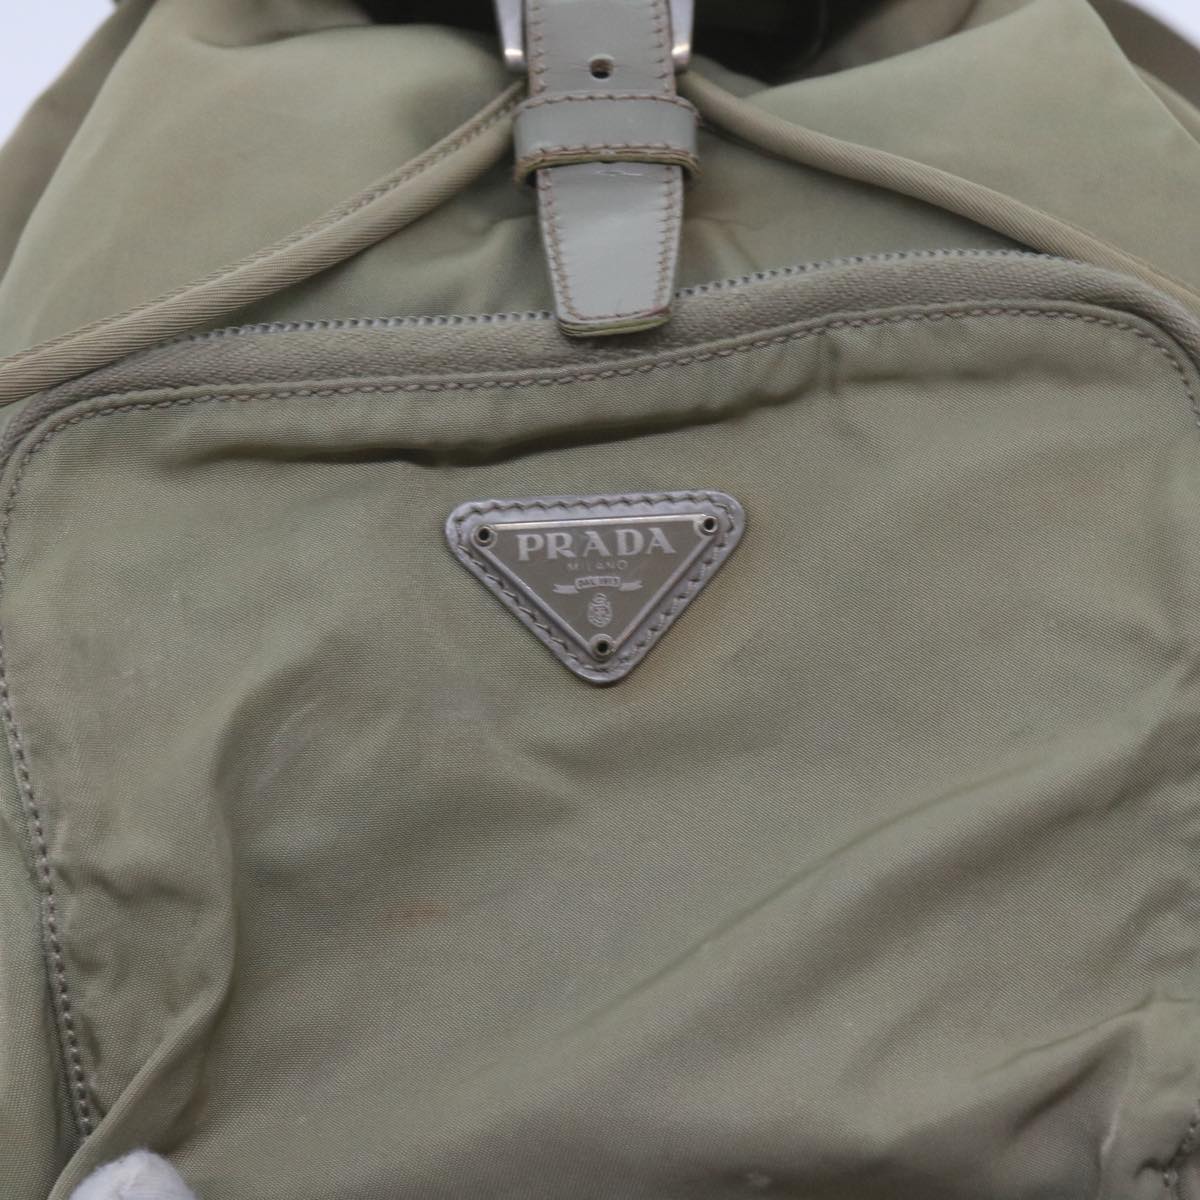 PRADA Backpack Nylon Beige Auth 60532